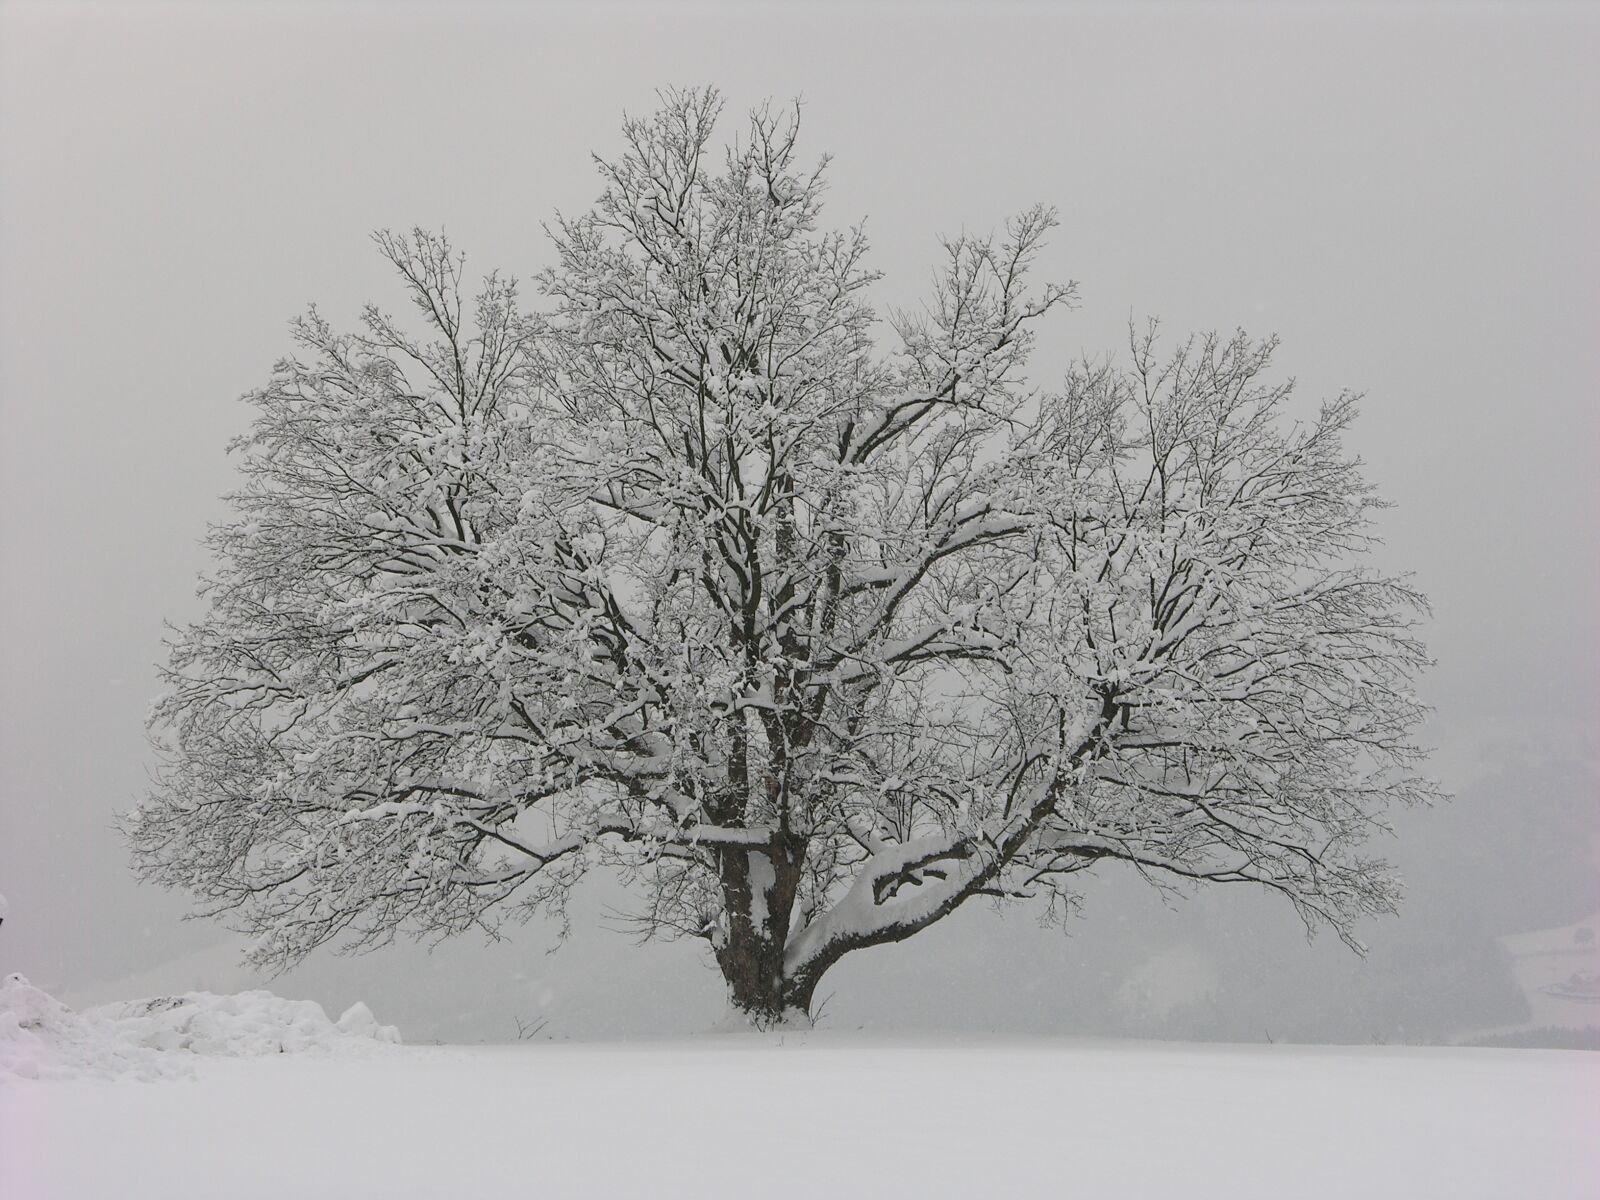 Nikon E8700 sample photo. Winter, tree, wintry photography